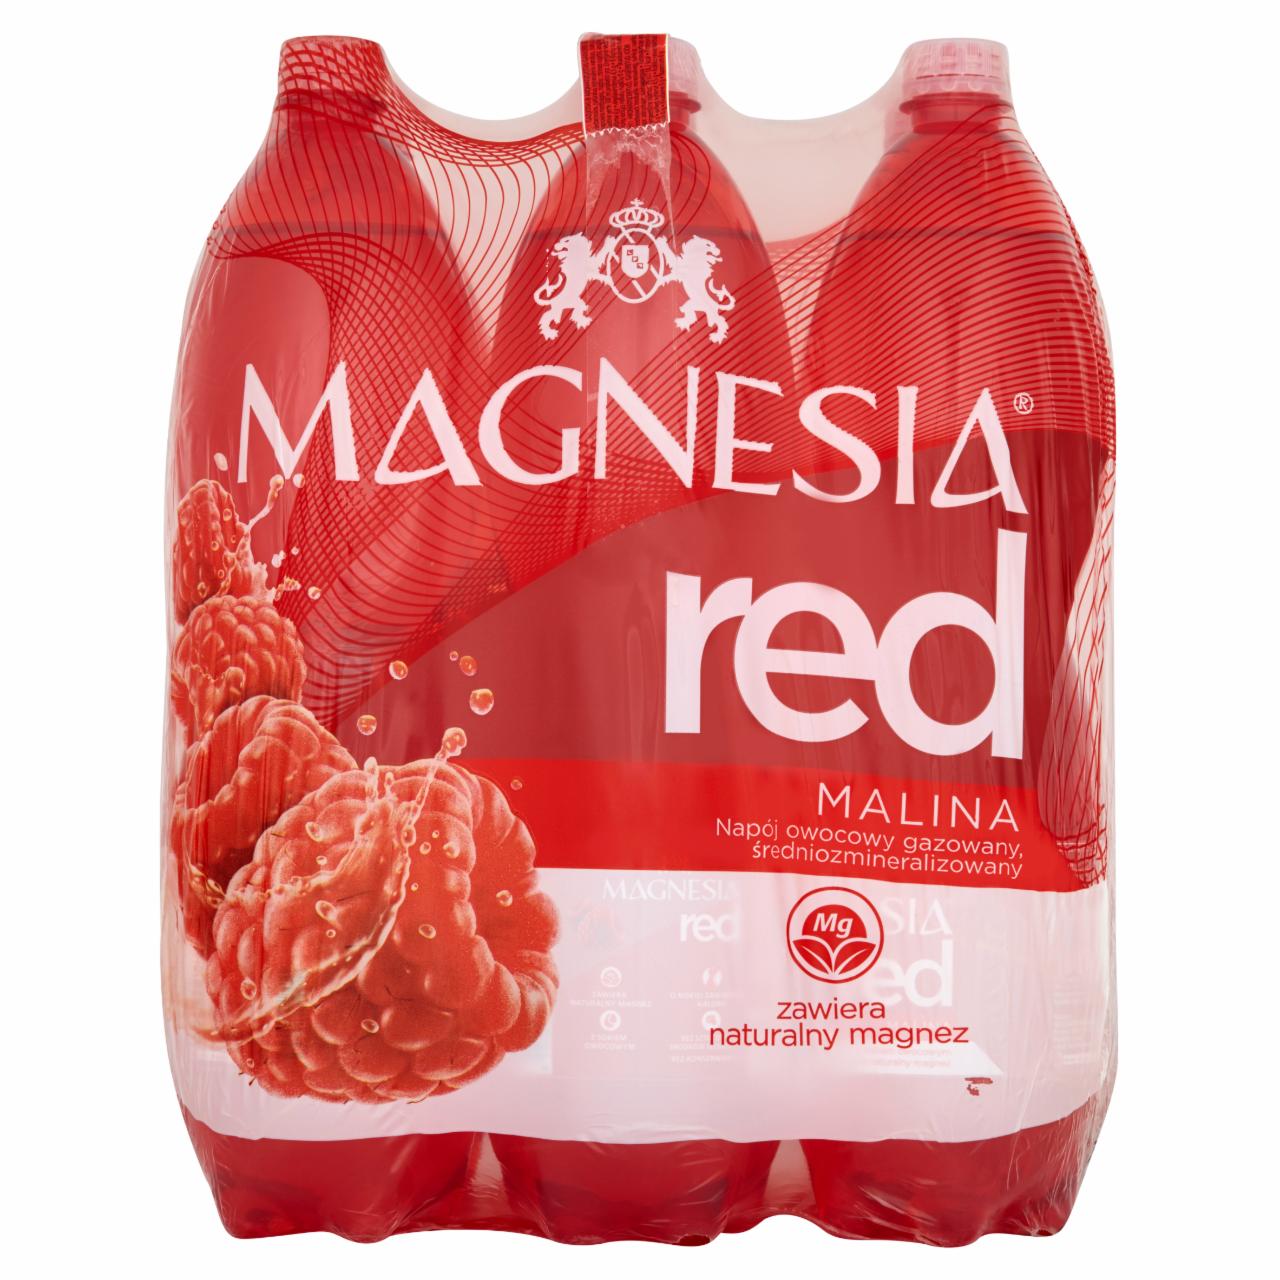 Zdjęcia - Magnesia Red Malina z sokiem owocowym Napój owocowy gazowany 6 x 1,5 l